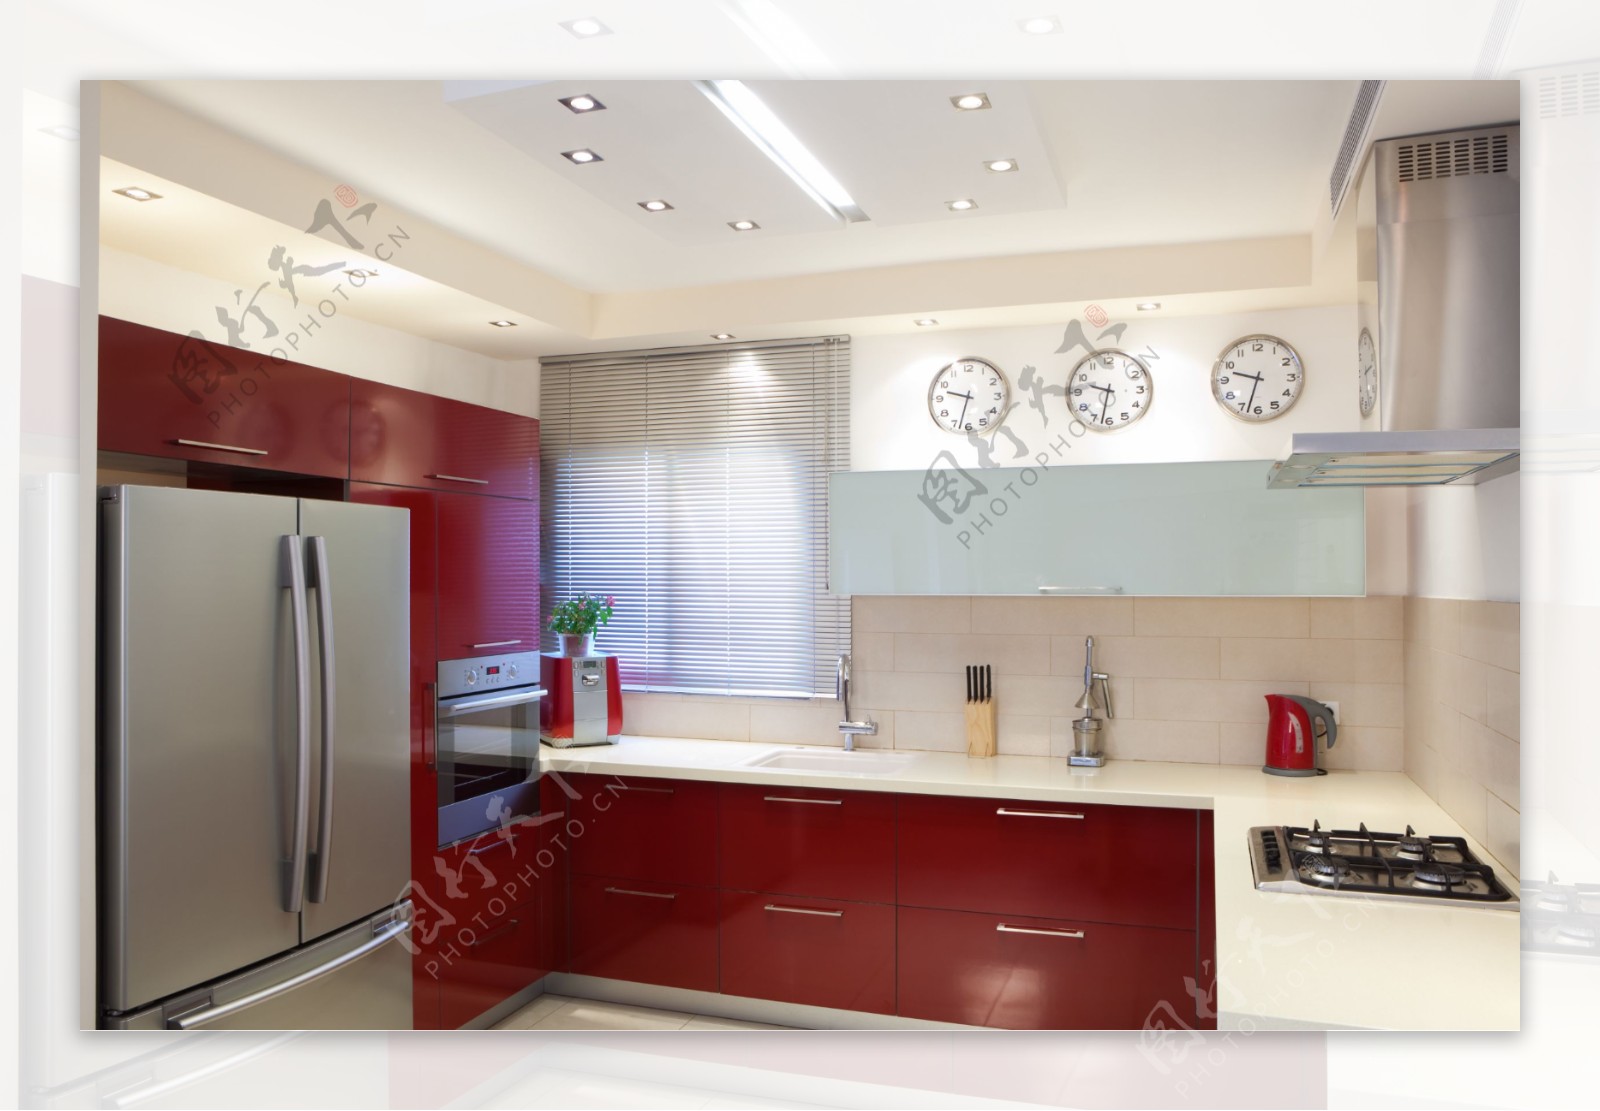 红色调厨房橱柜设计装修效果图 – 设计本装修效果图